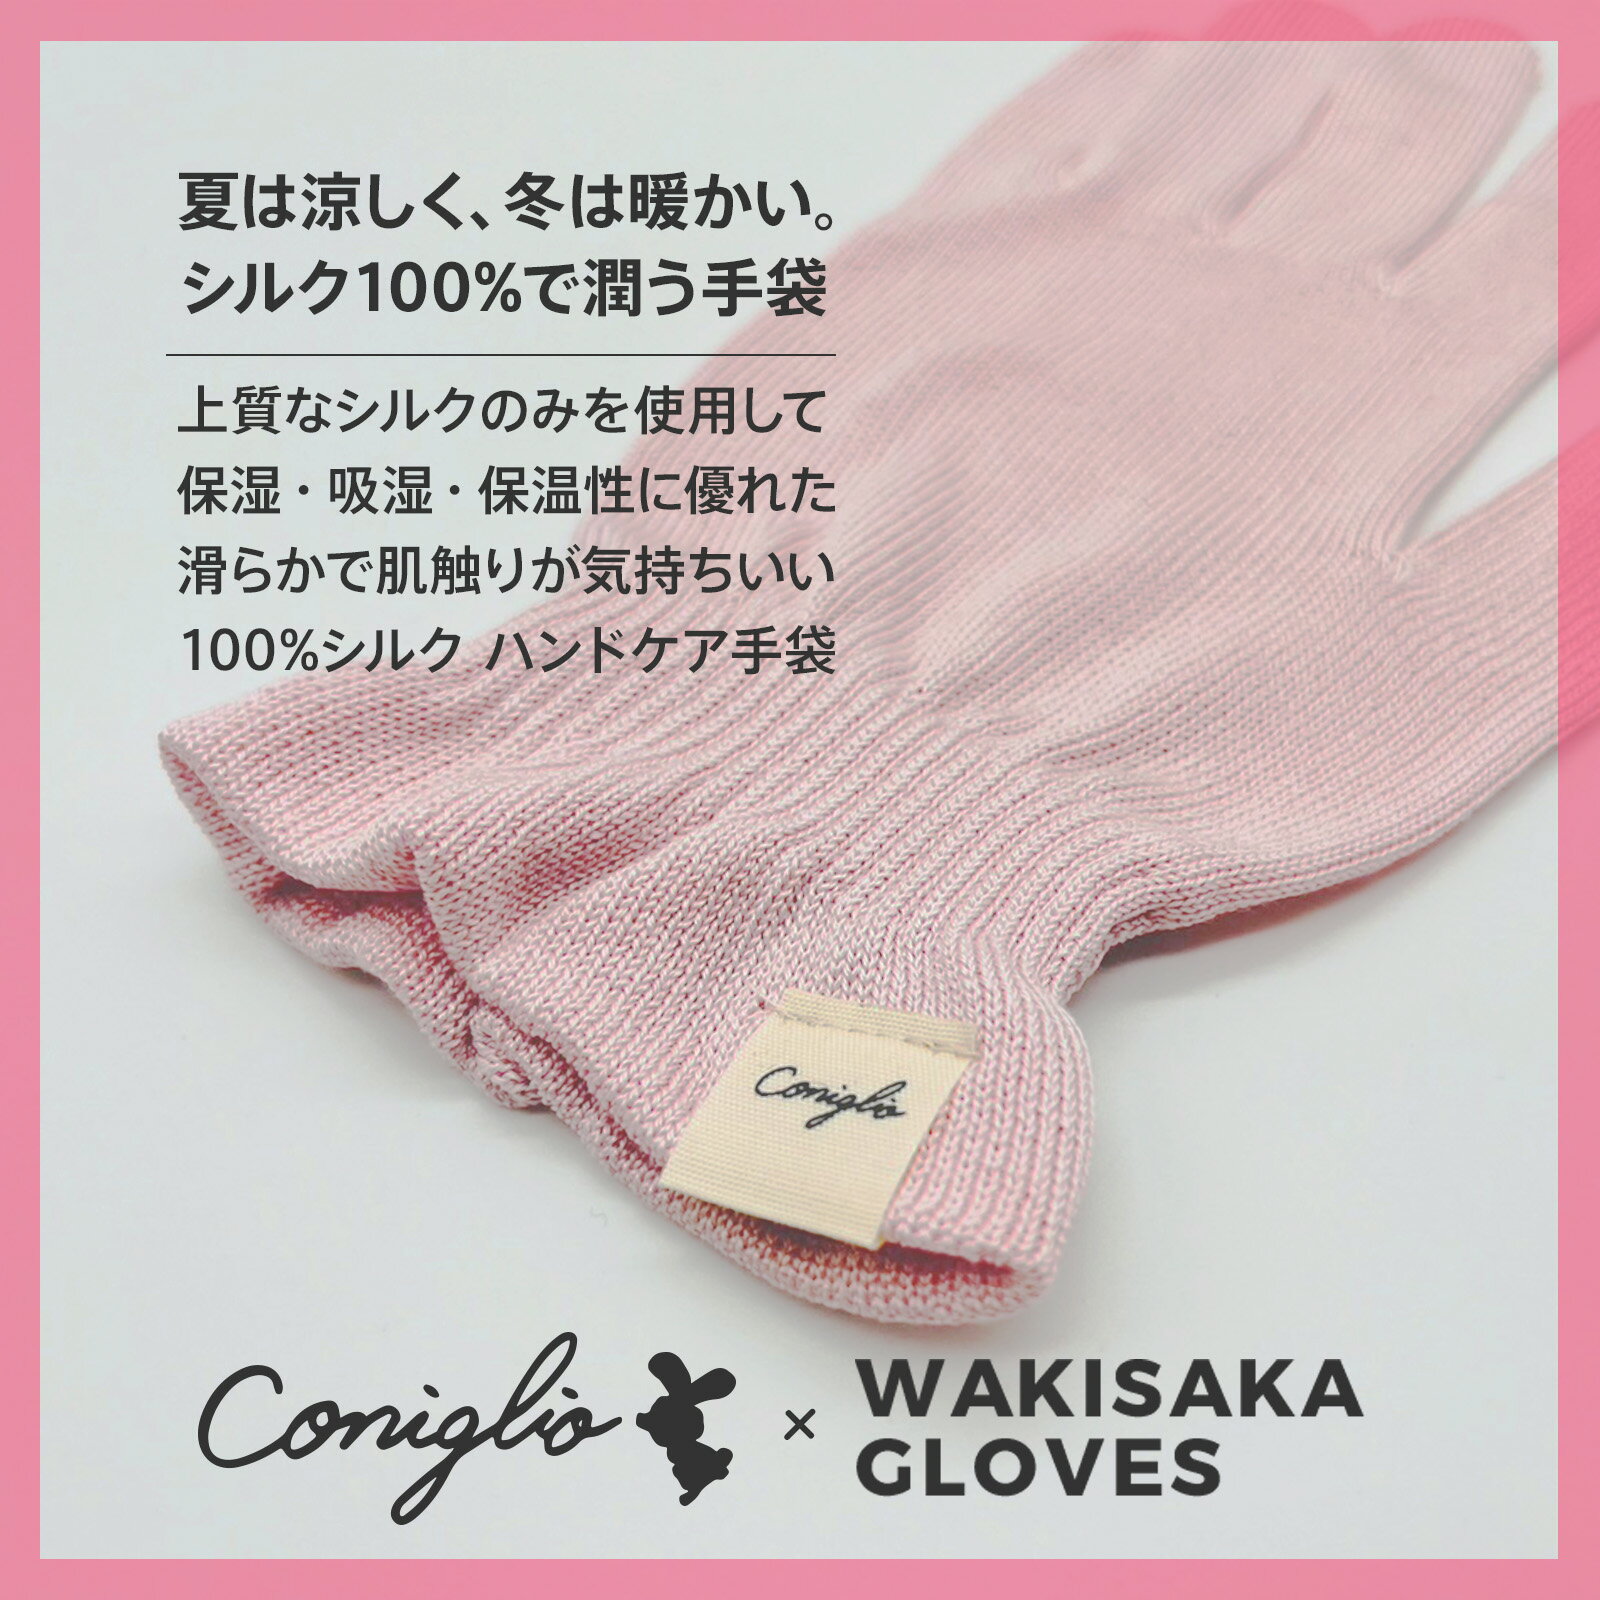 ハンドケア おやすみ ナイトケア シルク 100% 手袋 Conigilio × WAKISAKA GLOVES 「指先まで美しく」日本製 保温 乾燥 UVカット 冷え性 手荒れ あかぎれ ひびわれ 対策 ハンドクリームと合わせえて使える手袋 2